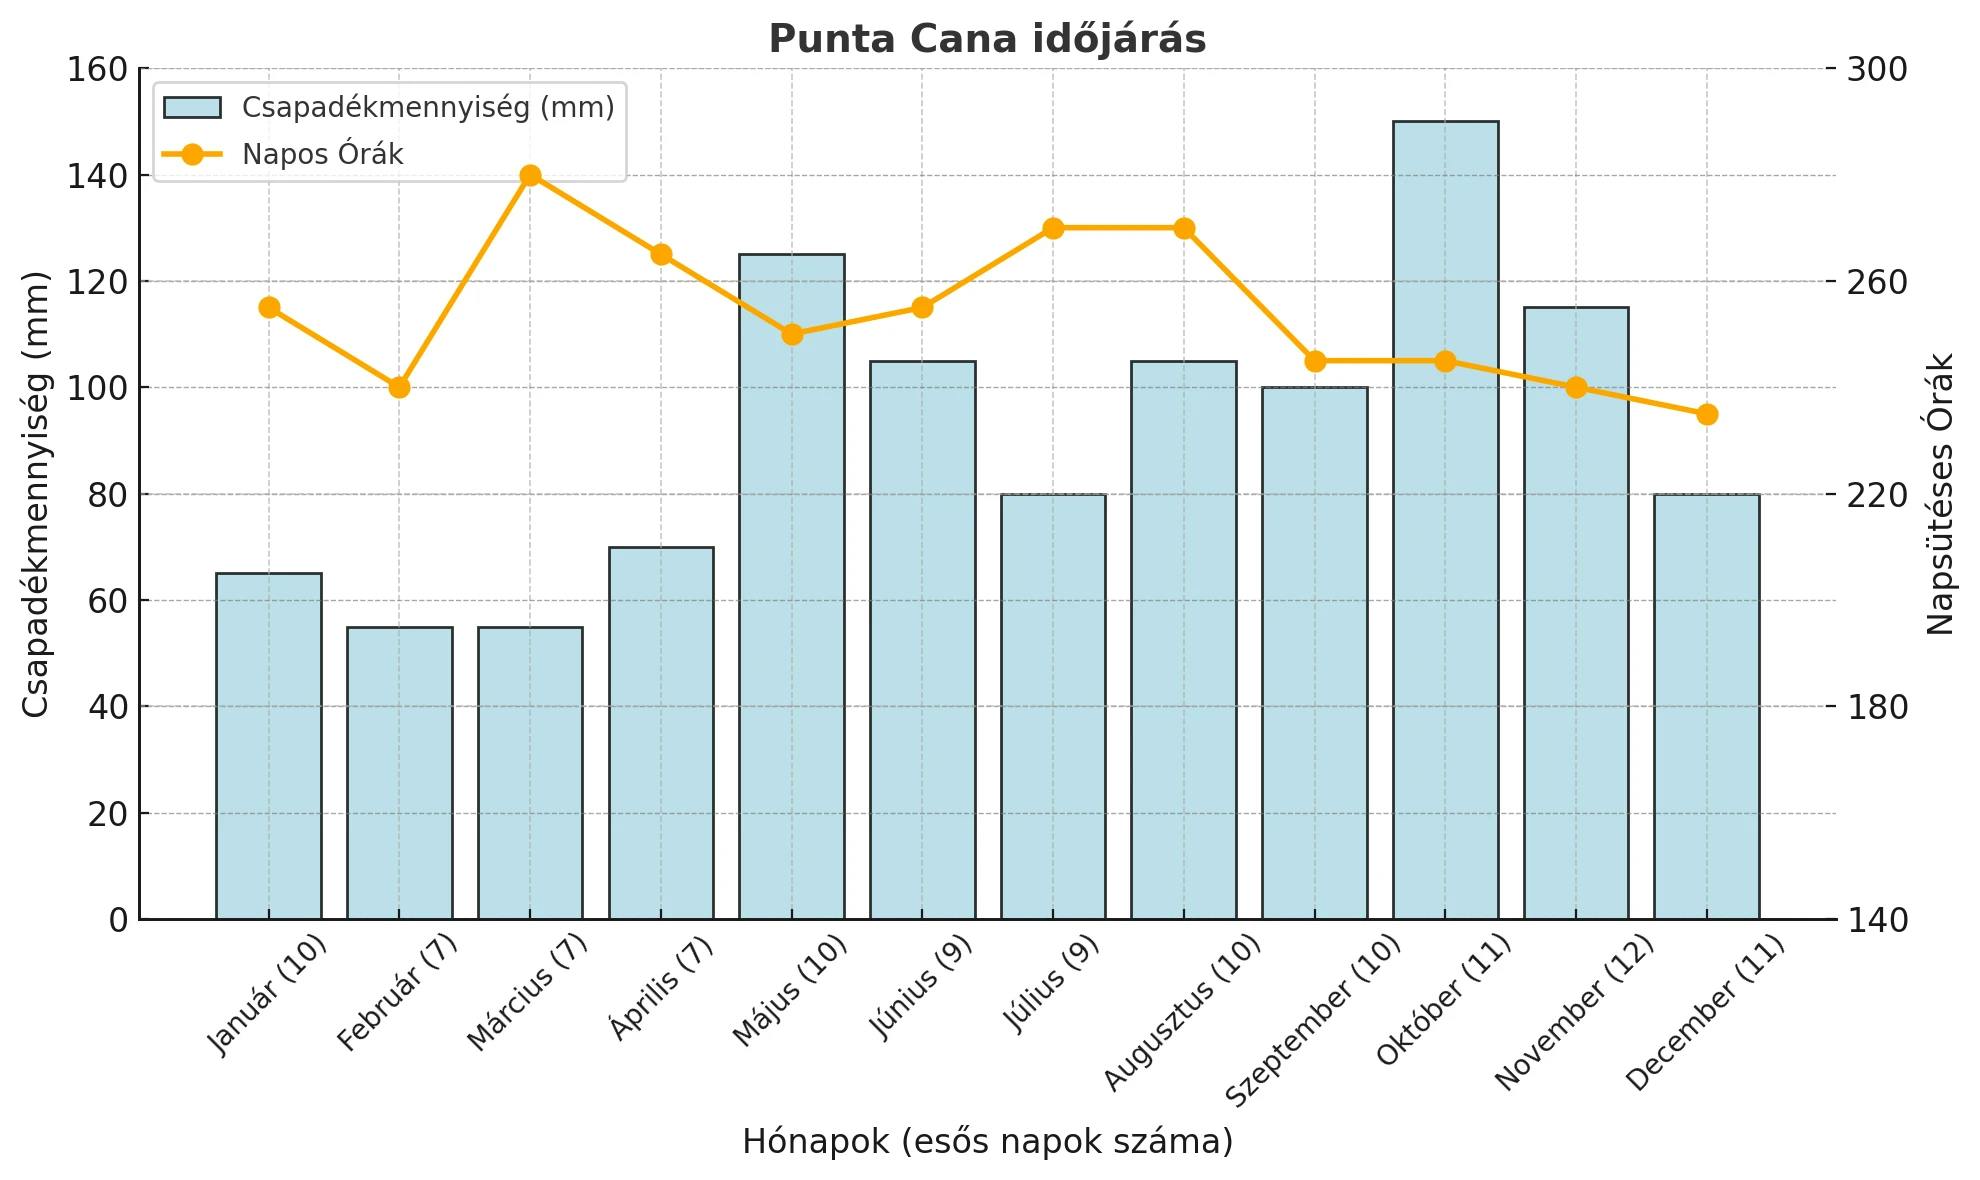 dominika időjárás grafikon esős napok száma napsütés és csapadékmennyiség